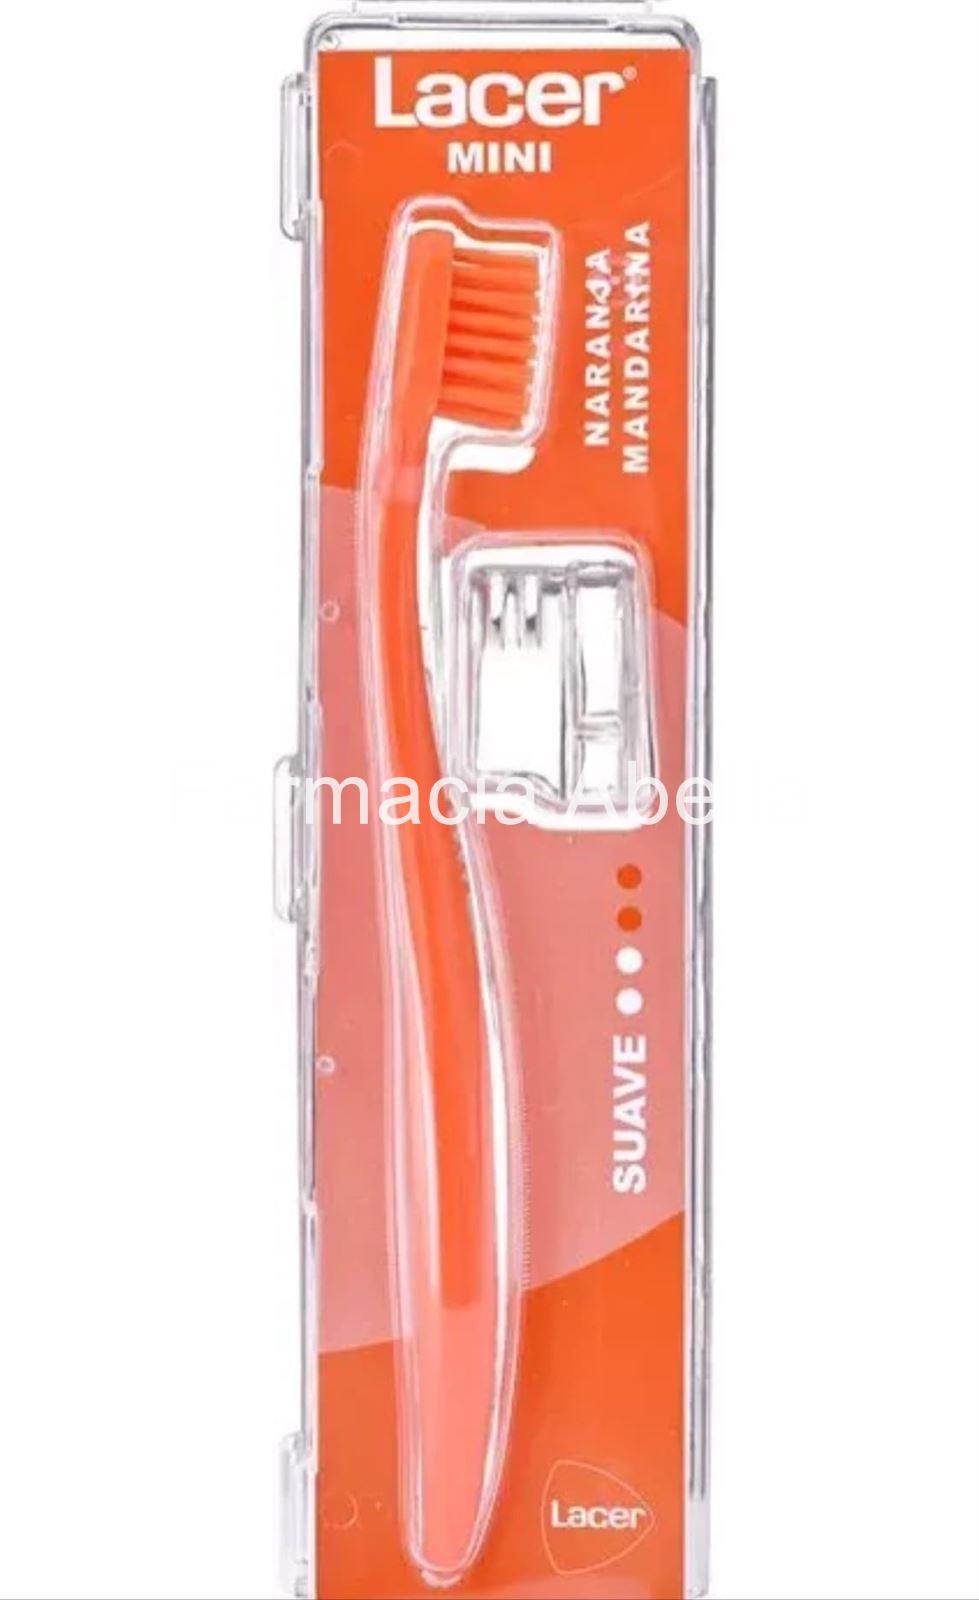 Cepillo de dientes Lacer Mini cabezal suave - Imagen 1